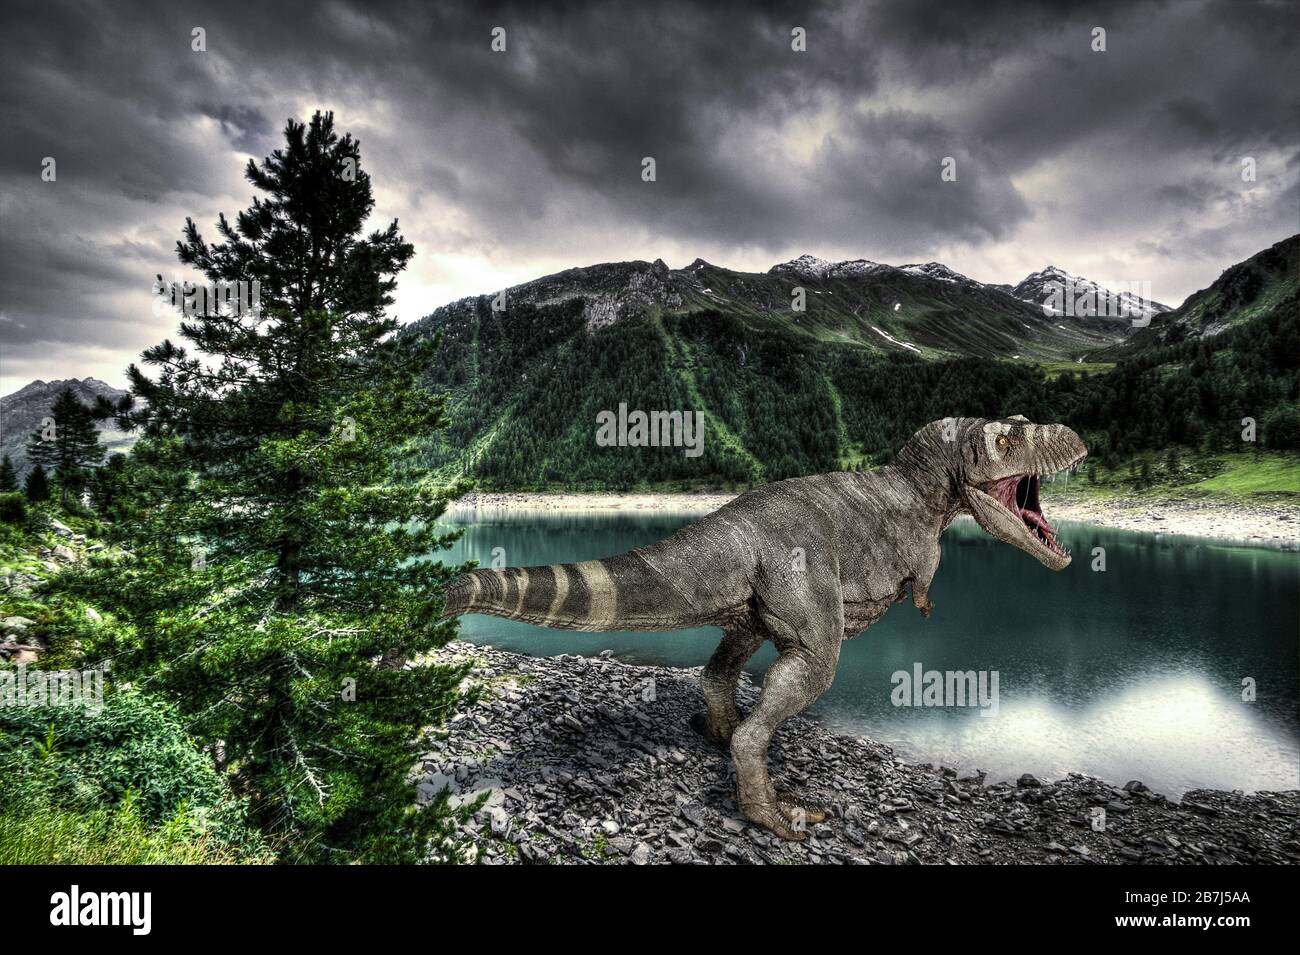 Dinosaure T-Rex sur un rivage de lac, avec des montagnes en arrière-plan. Illustration tridimensionnelle. Banque D'Images